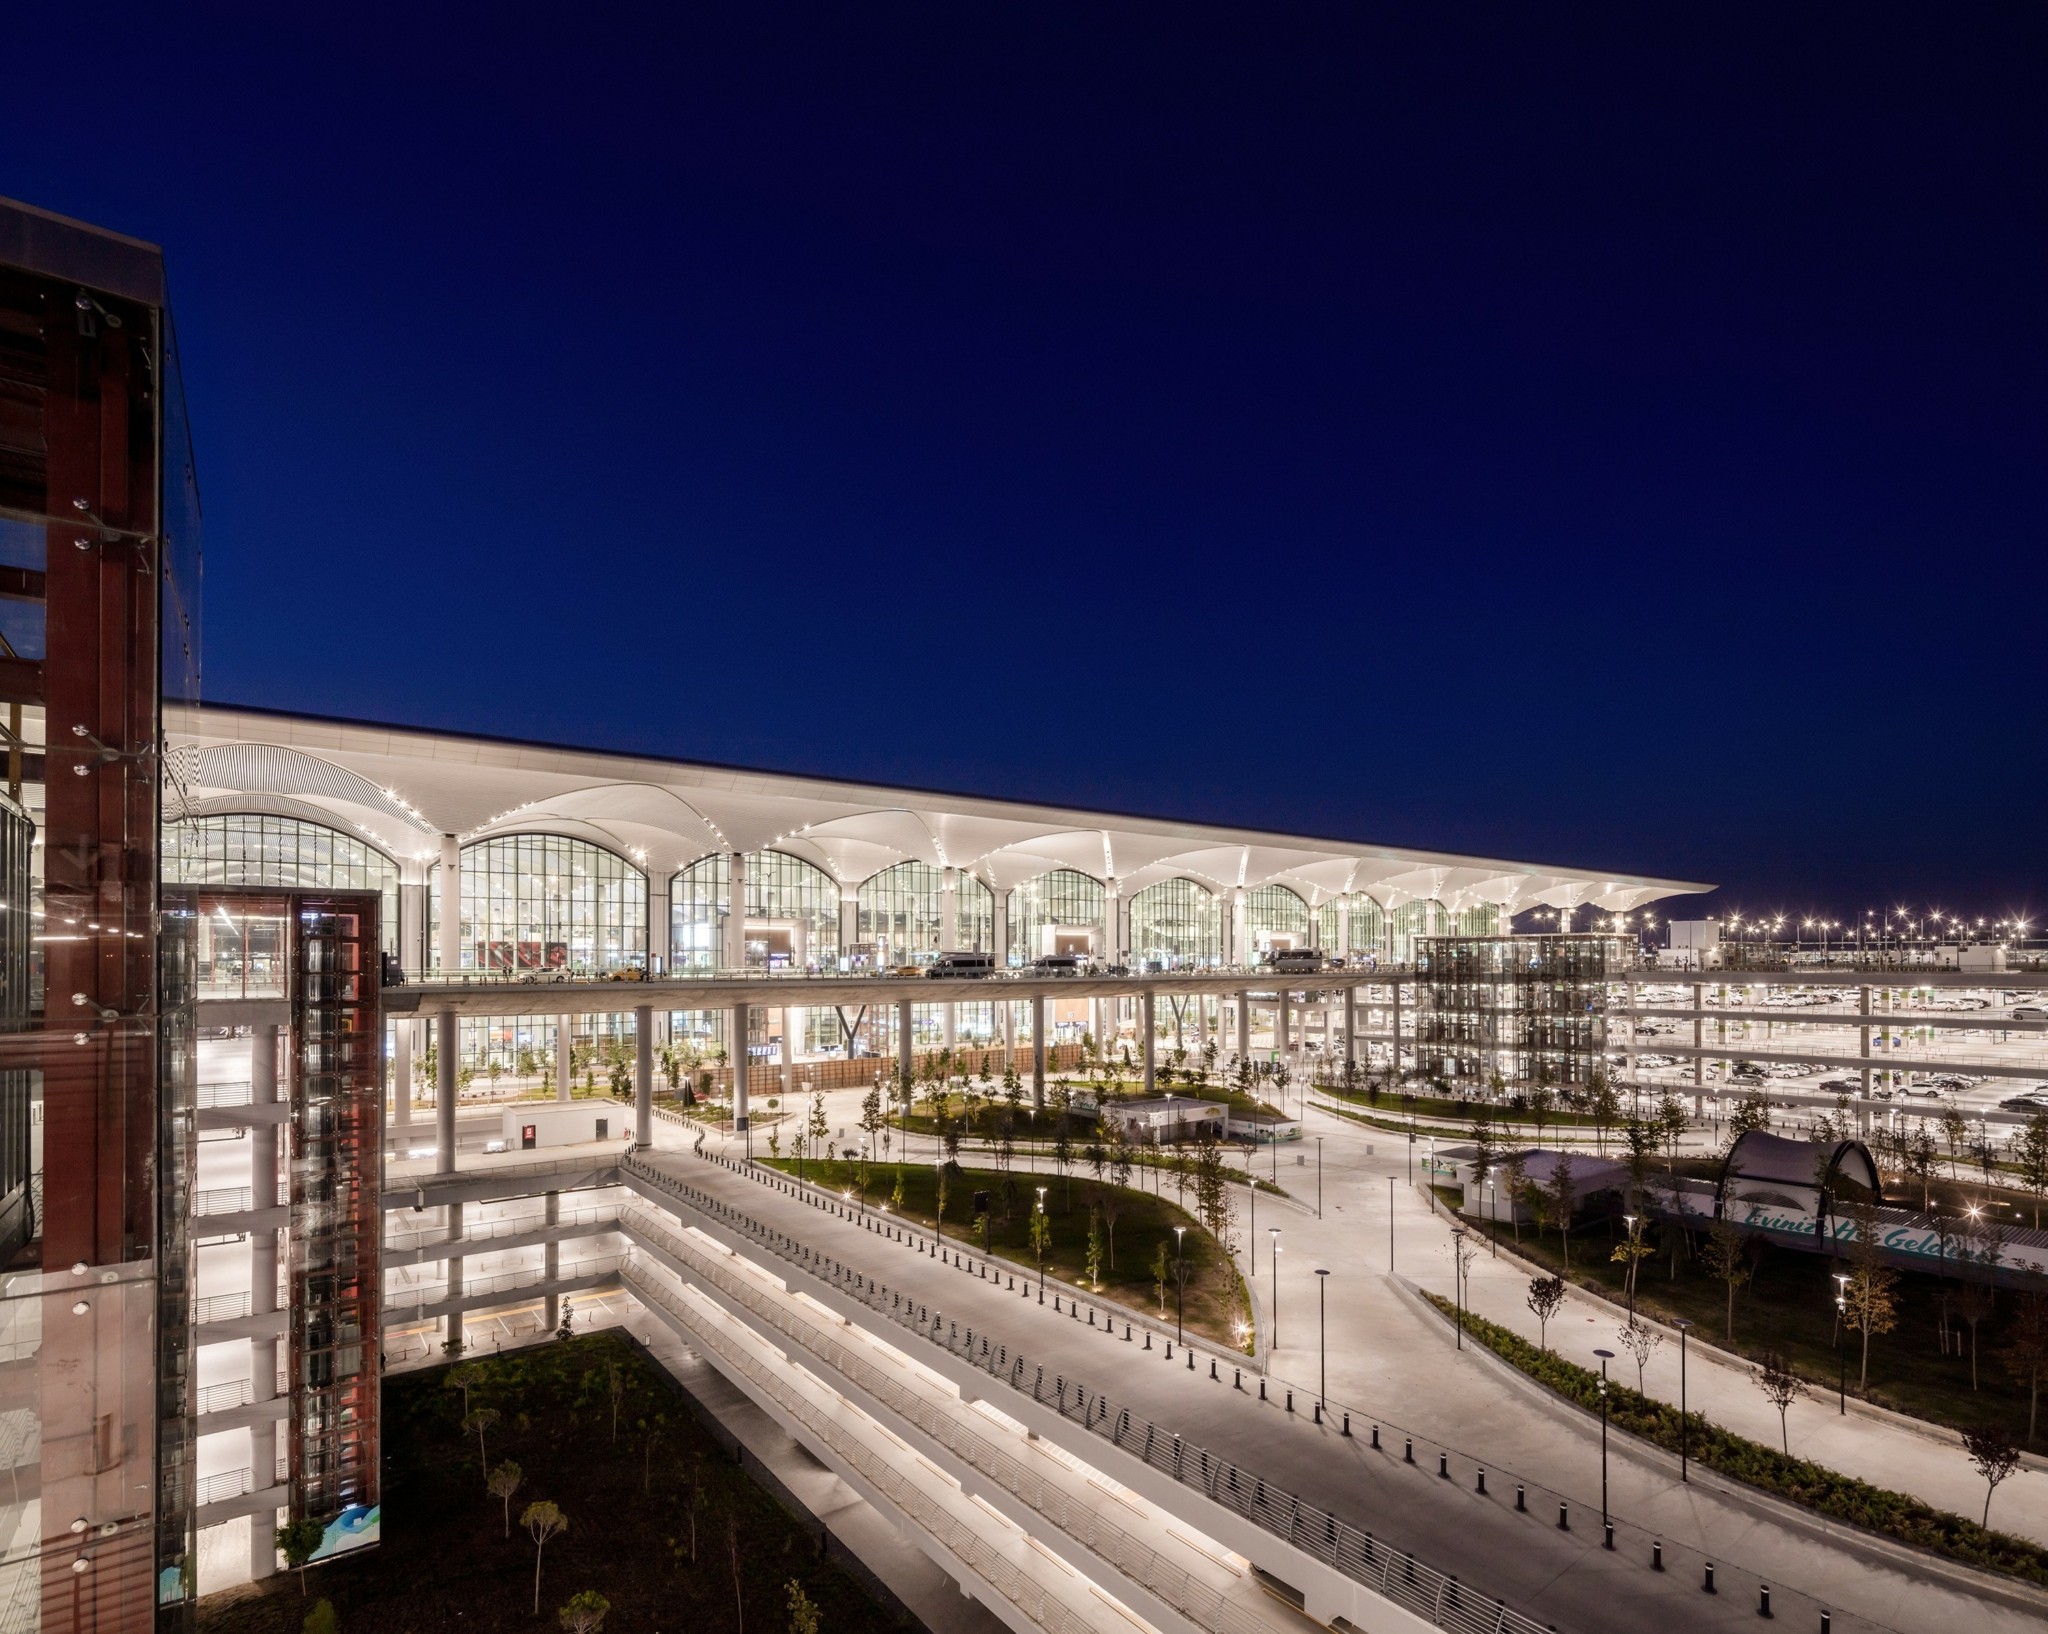 Το νέο αεροδρόμιο της Κωνσταντινούπολης είναι ένας γίγαντας στο σταυροδρόμι των ηπείρων